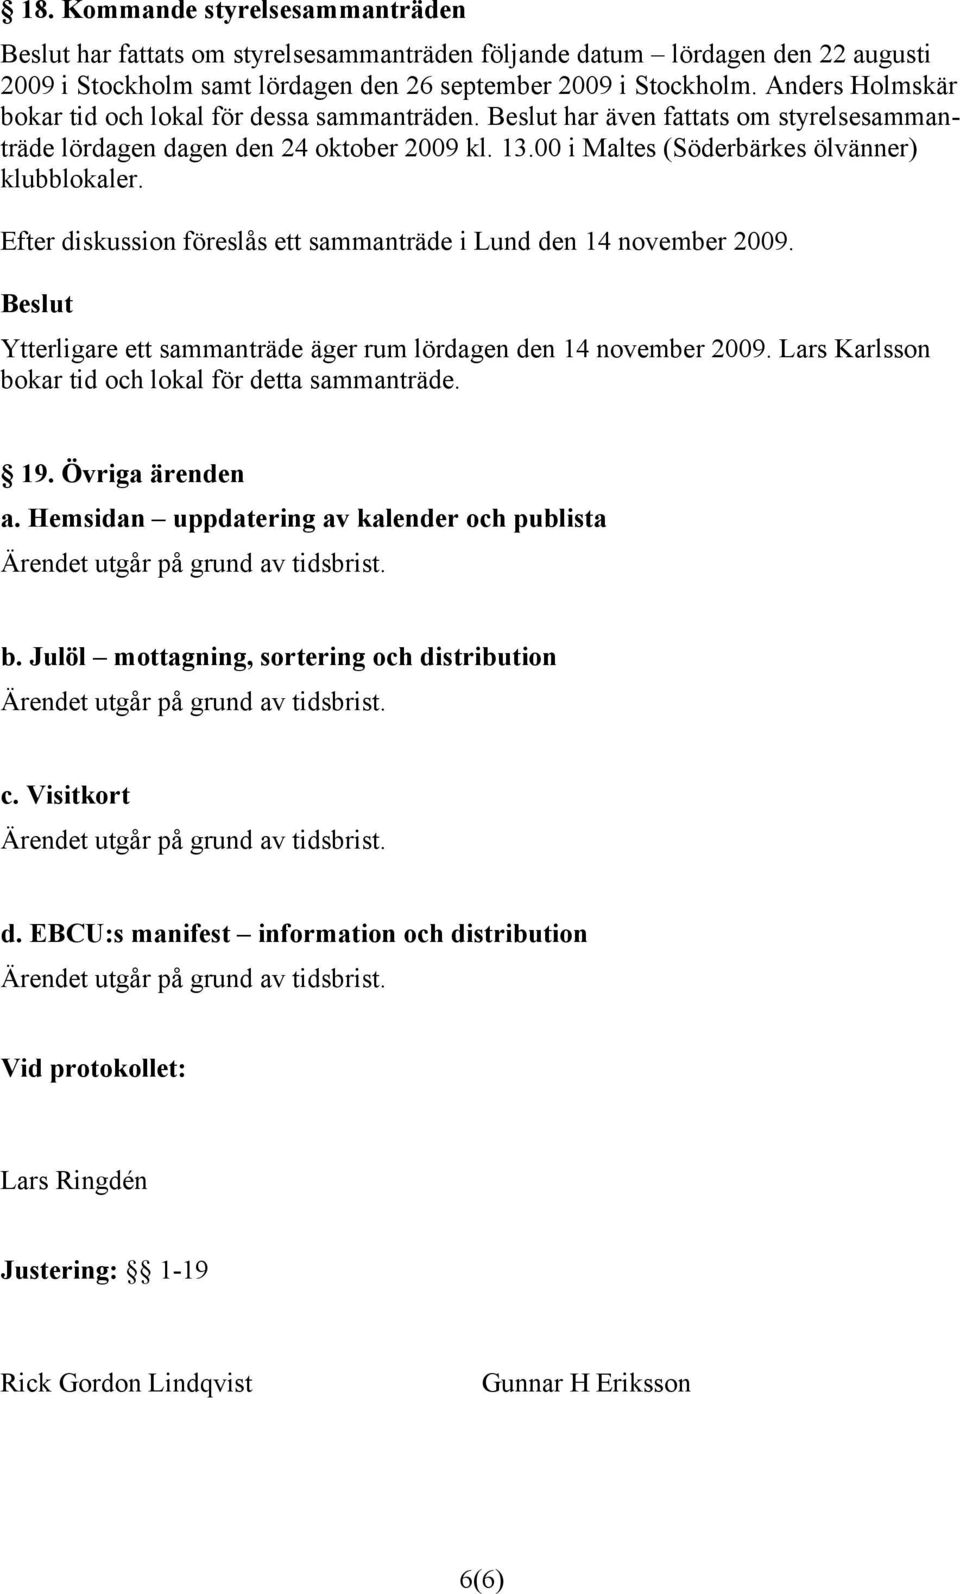 Efter diskussion föreslås ett sammanträde i Lund den 14 november 2009. Ytterligare ett sammanträde äger rum lördagen den 14 november 2009. Lars Karlsson bokar tid och lokal för detta sammanträde. 19.